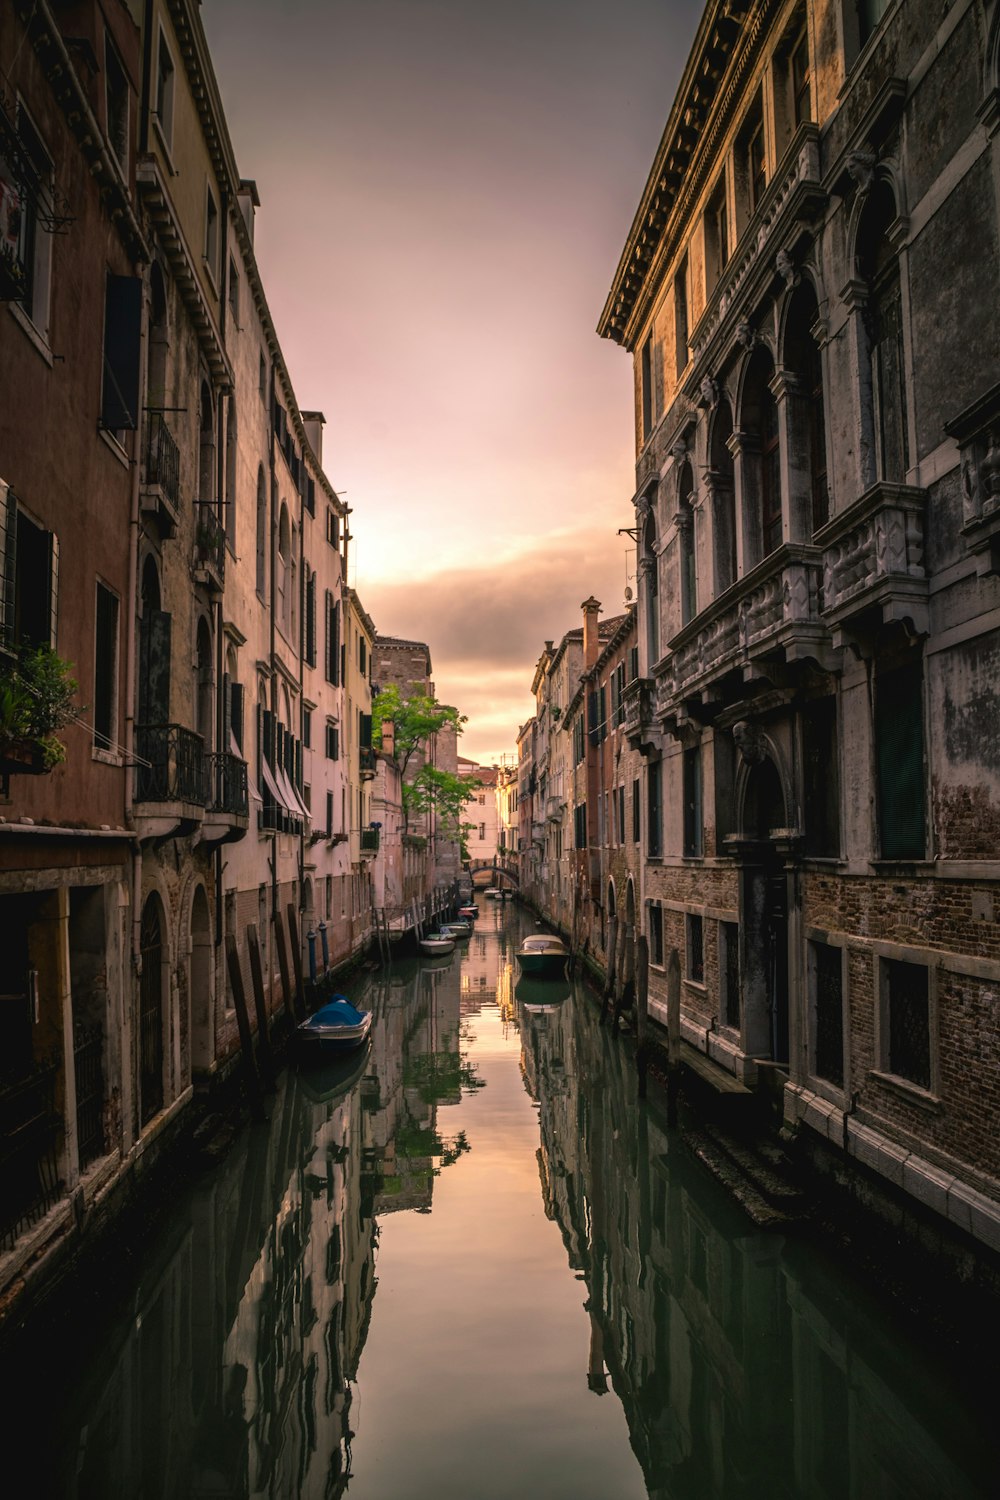 Canale di Venezia, Italia